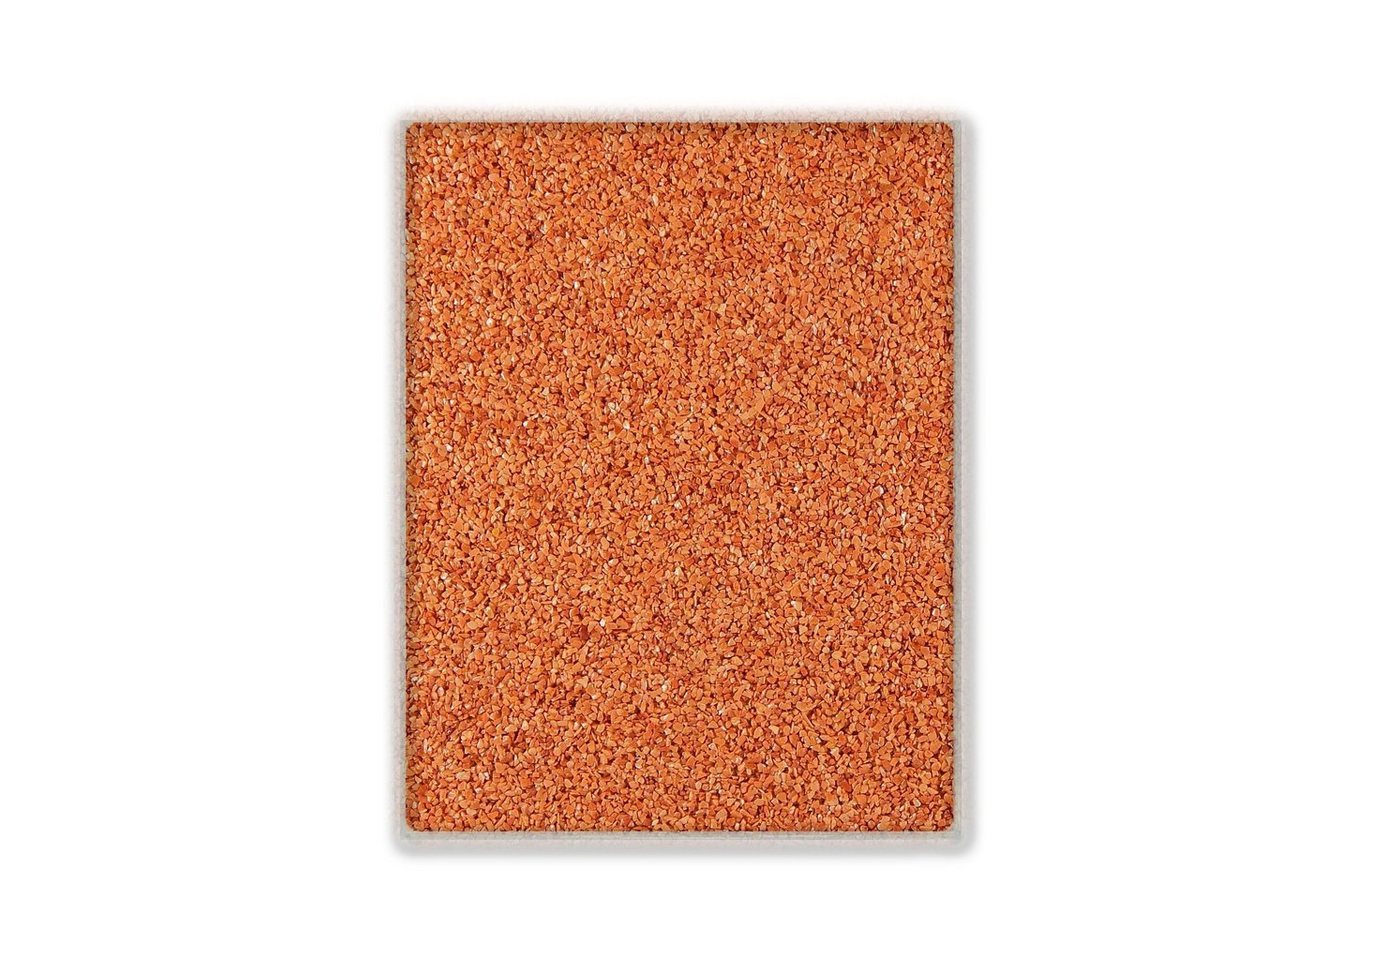 Terralith® Designboden Farbmuster Kompaktboden -rosso-, Originalware aus der Charge, die wir in diesem Moment im Abverkauf haben. von Terralith®